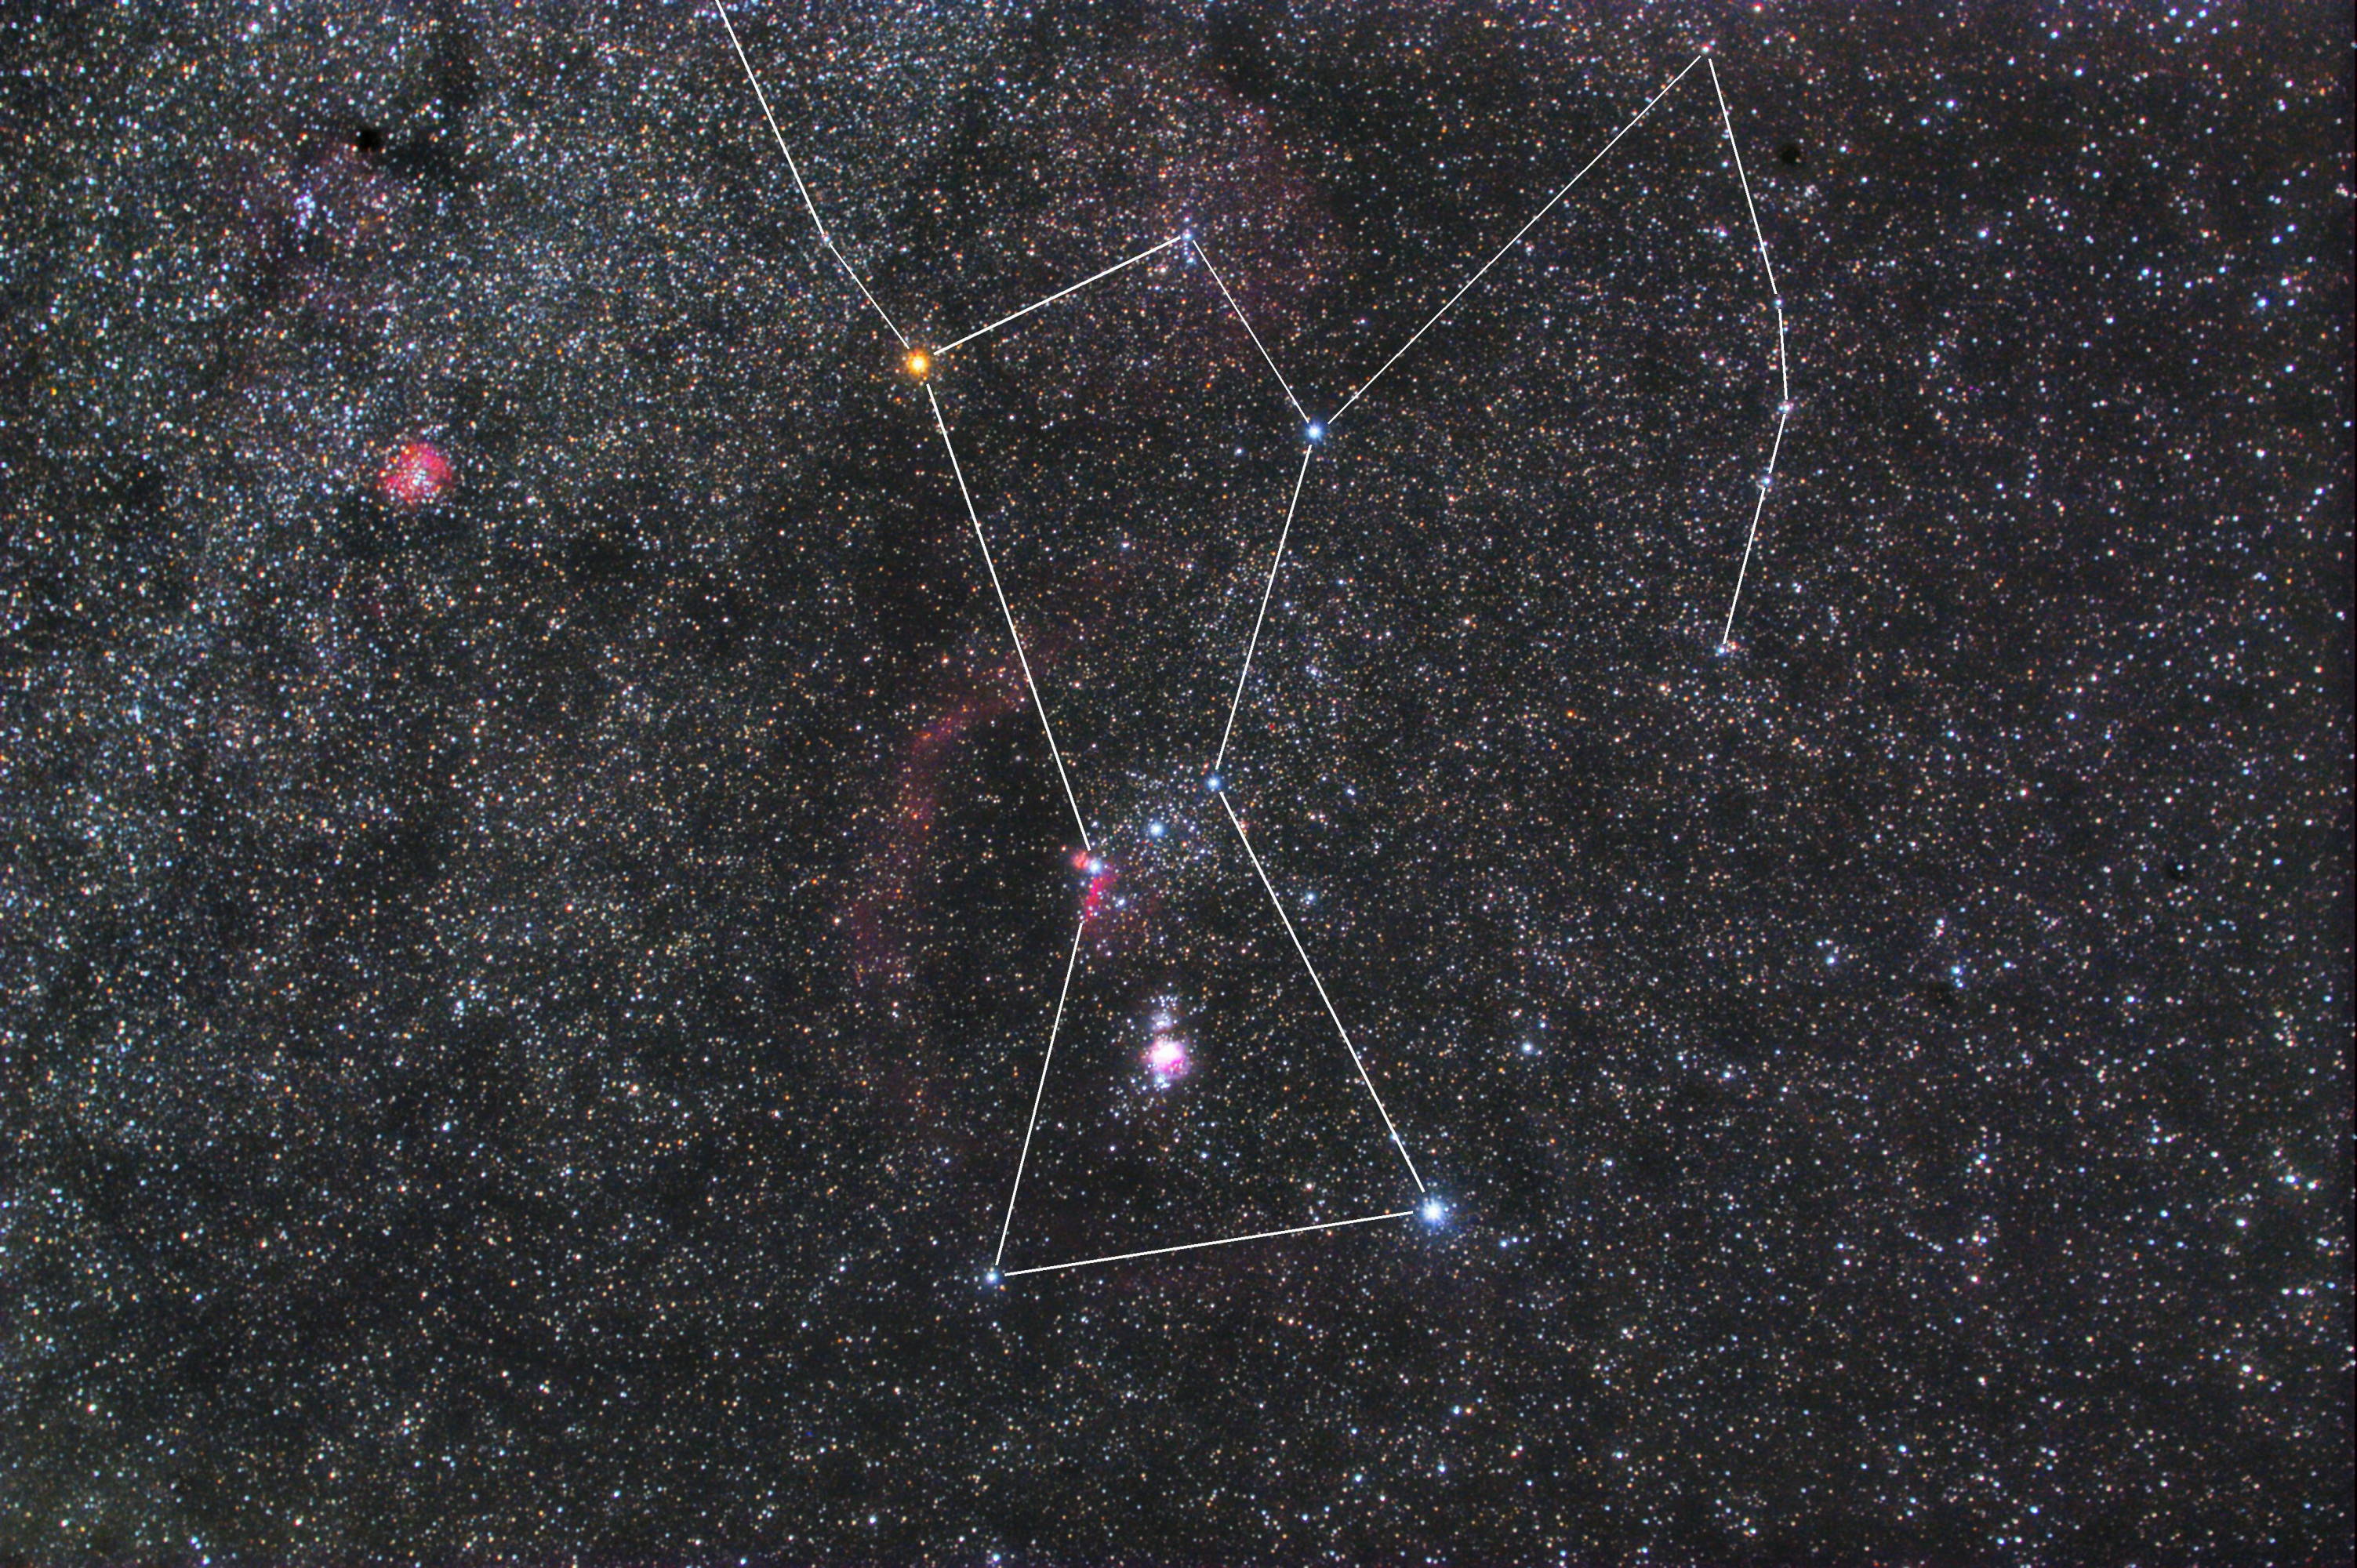 オリオン座の天体と位置がわかる星図や写真